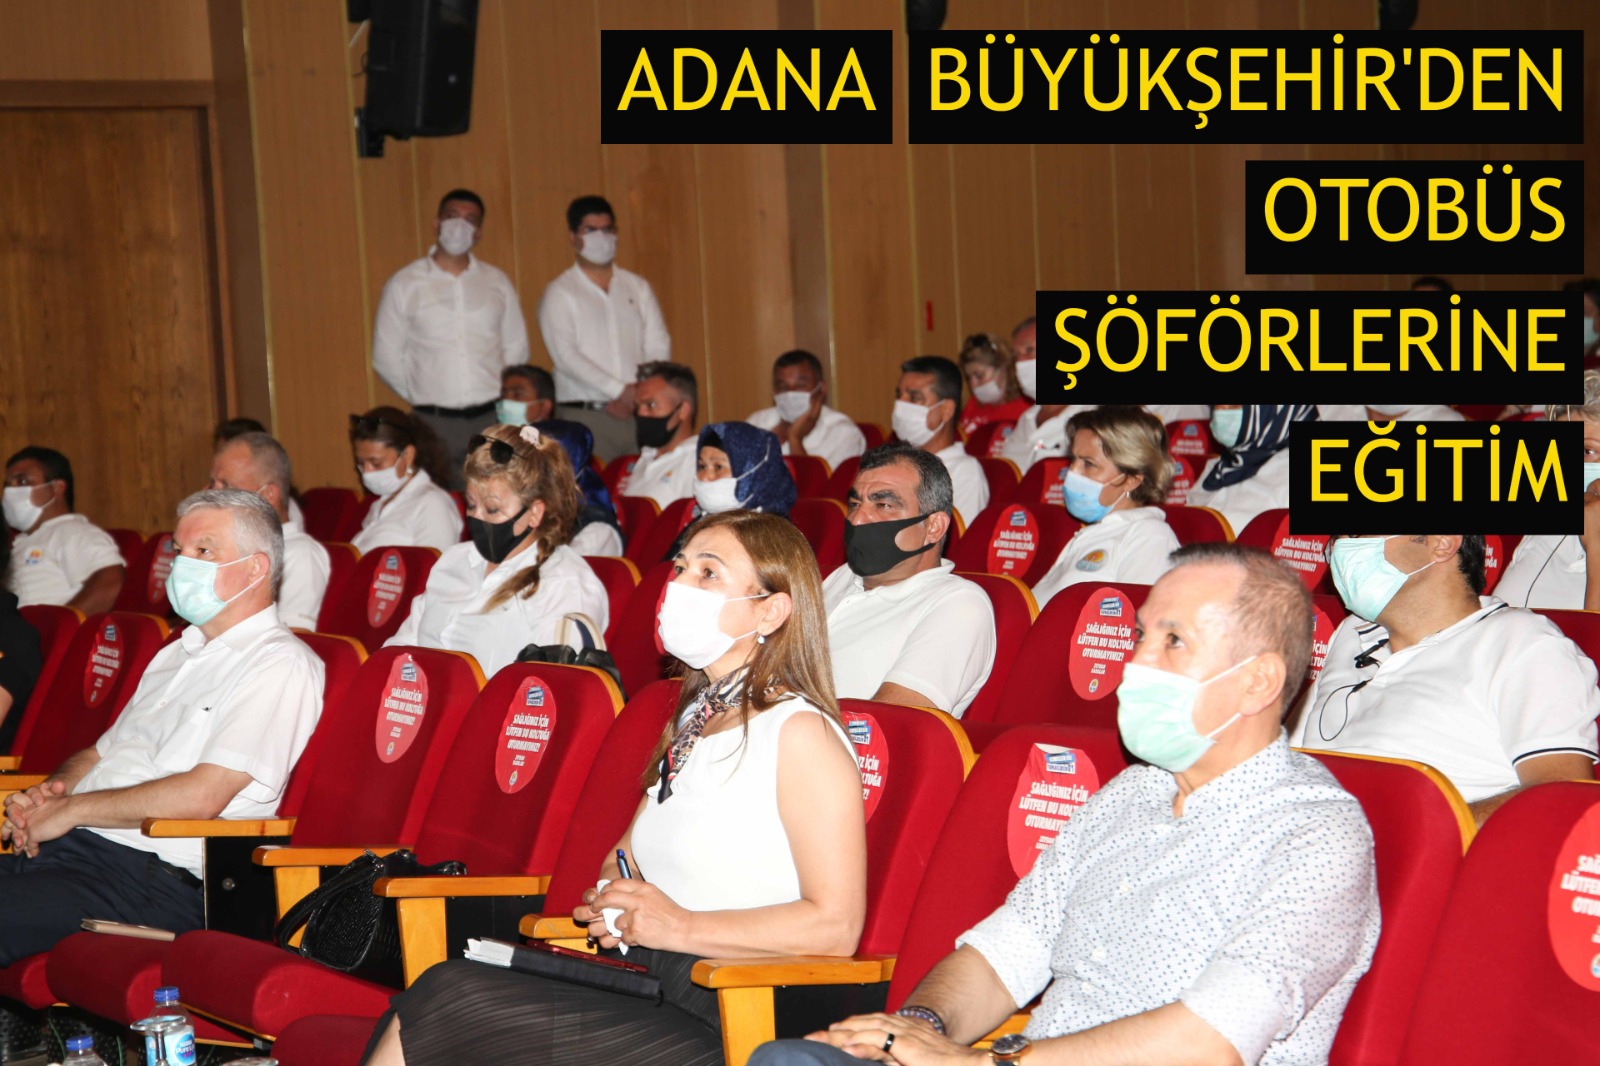 Adana Büyükşehir'den otobüs şöförlerine eğitim